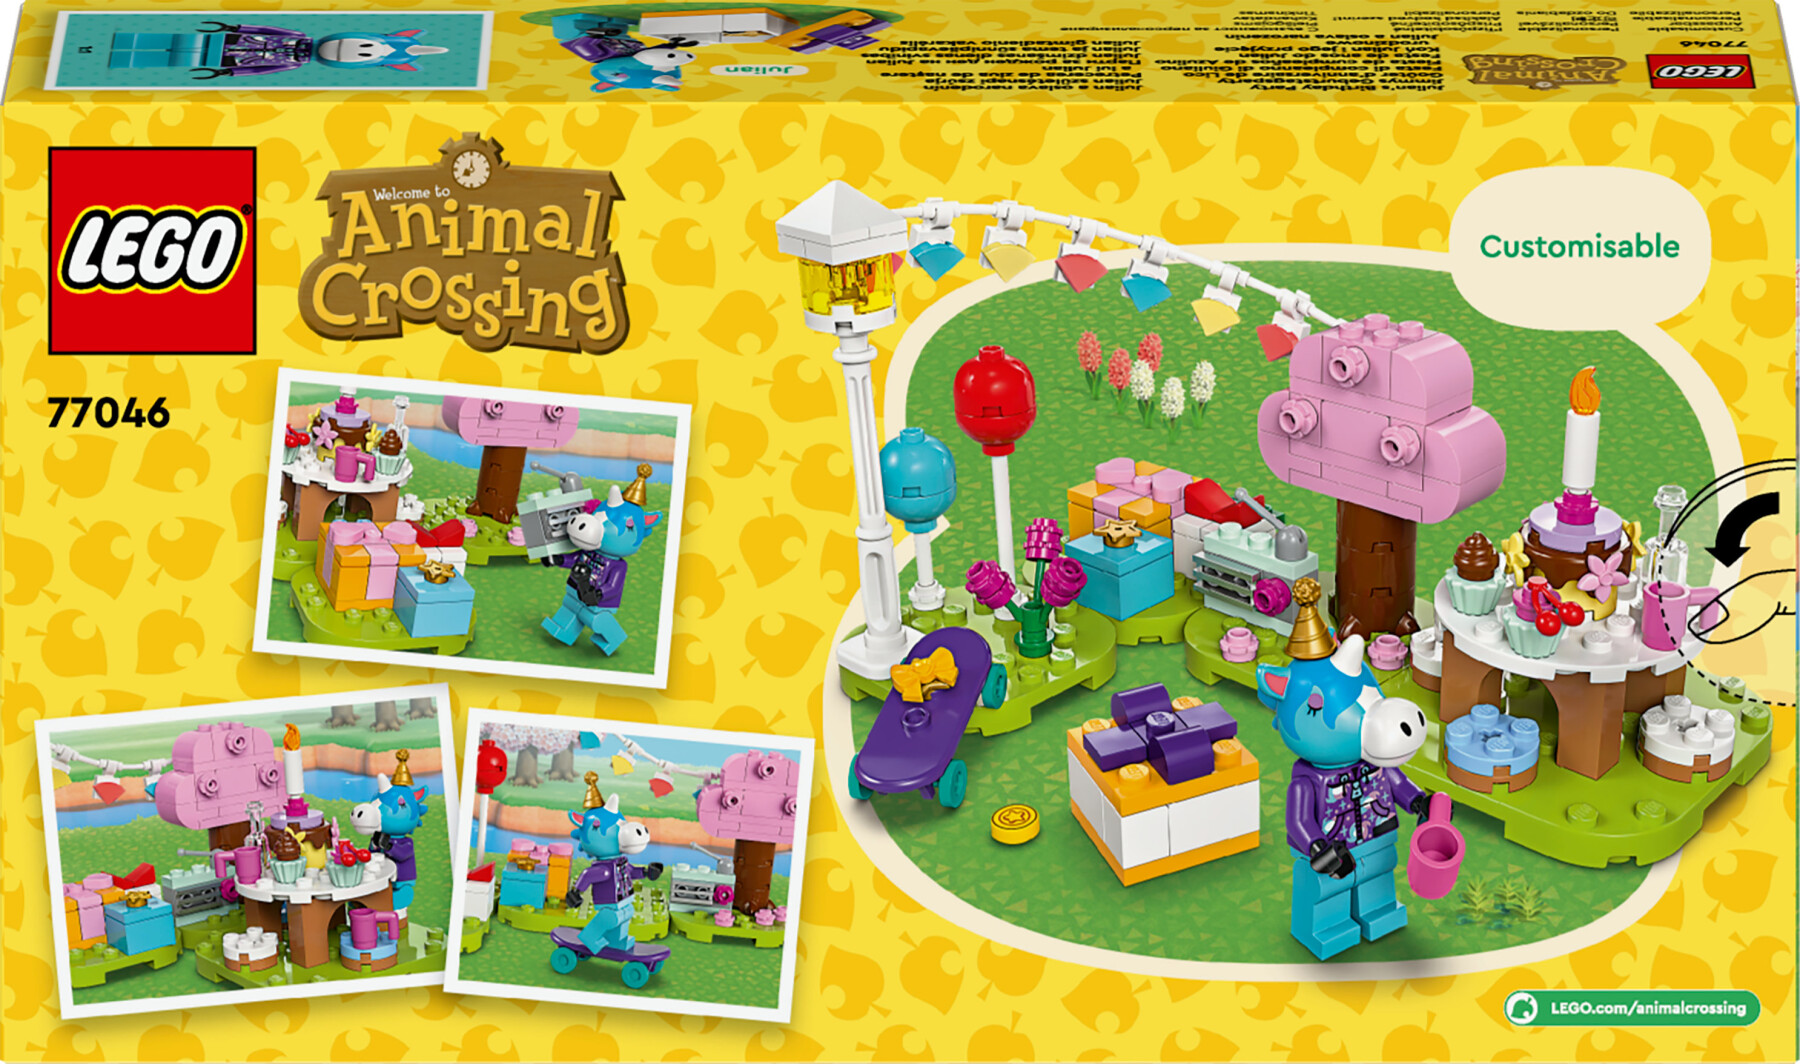 Lego animal crossing 77046 festa di compleanno di giuliano, giochi creativi per bambini 6+, minifigure di unicorno giocattolo - Lego Animal Crossing